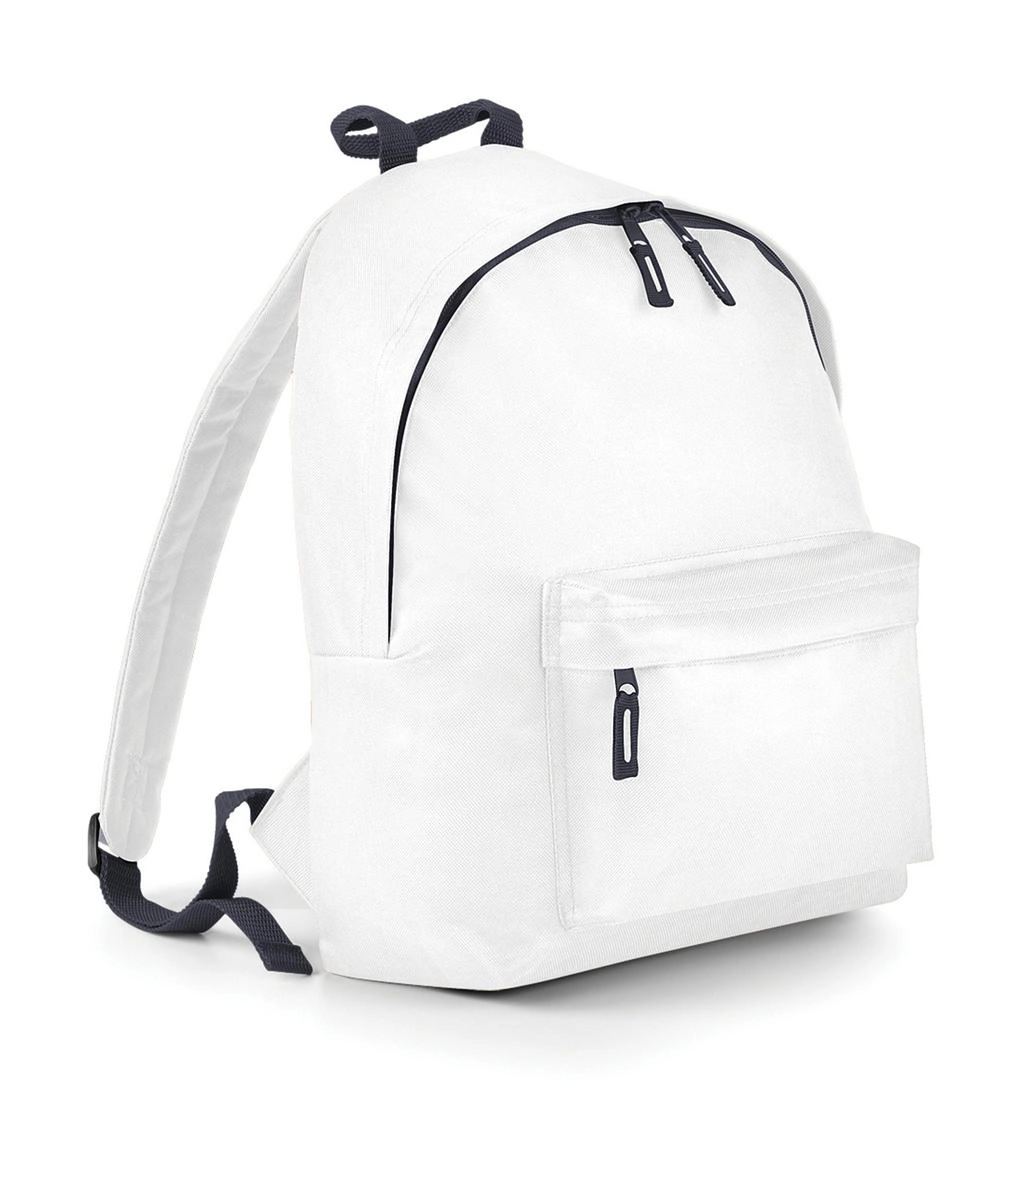 Junior Fashion Backpack zum Besticken und Bedrucken in der Farbe White/Graphite Grey mit Ihren Logo, Schriftzug oder Motiv.